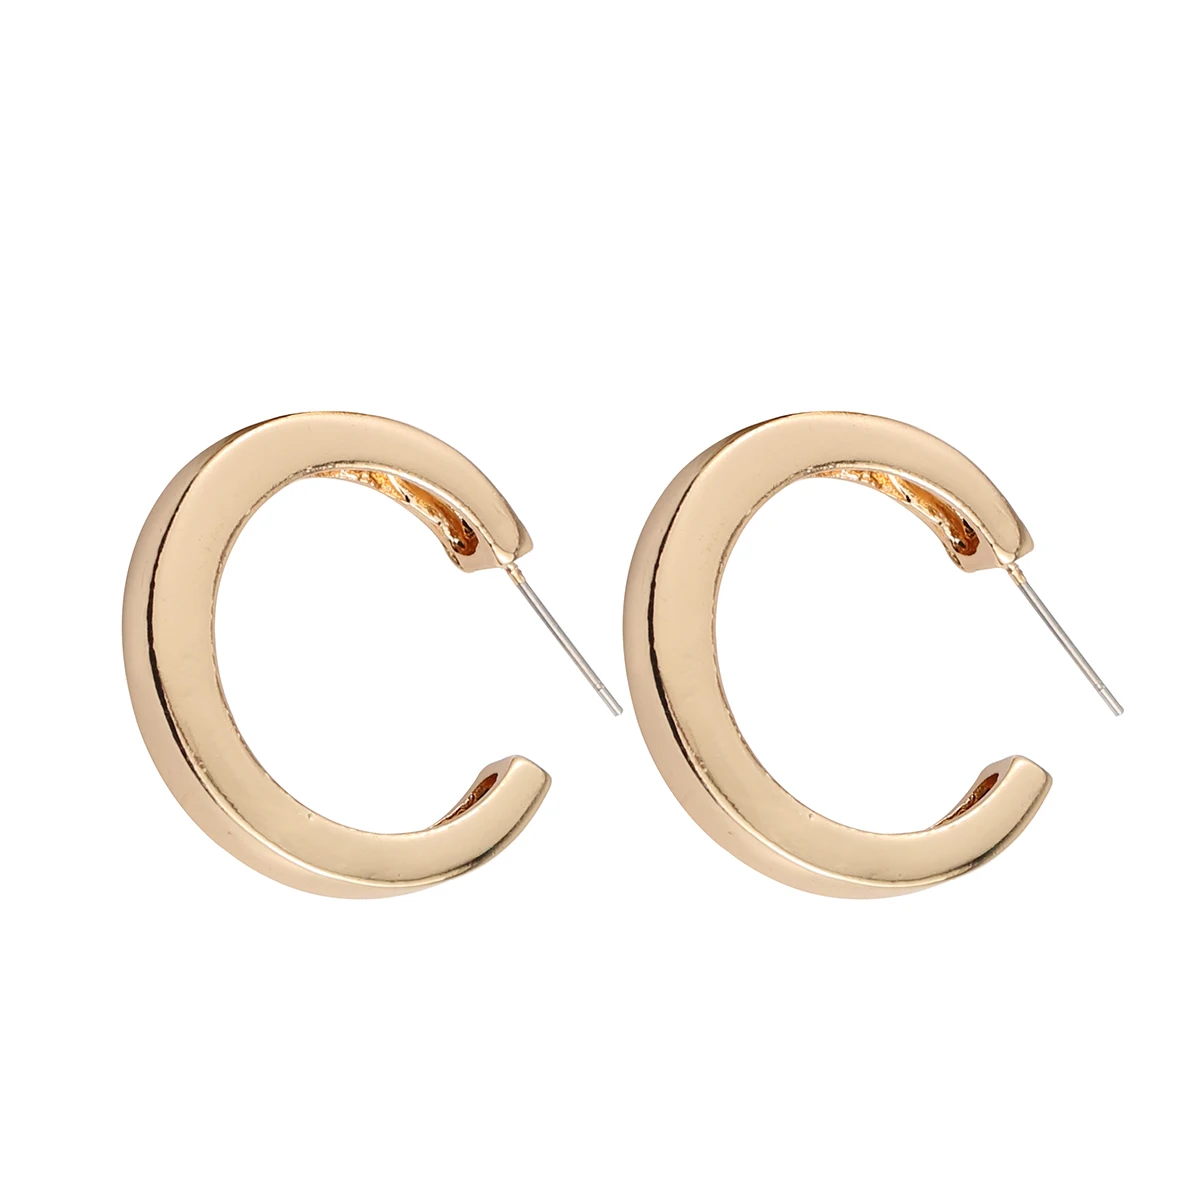 

CARTER LISA Vintage Metal C-Shaped Earings Irregular Geometric 14K Gold Plating Hoop Earrings for Women Ear Jewelry